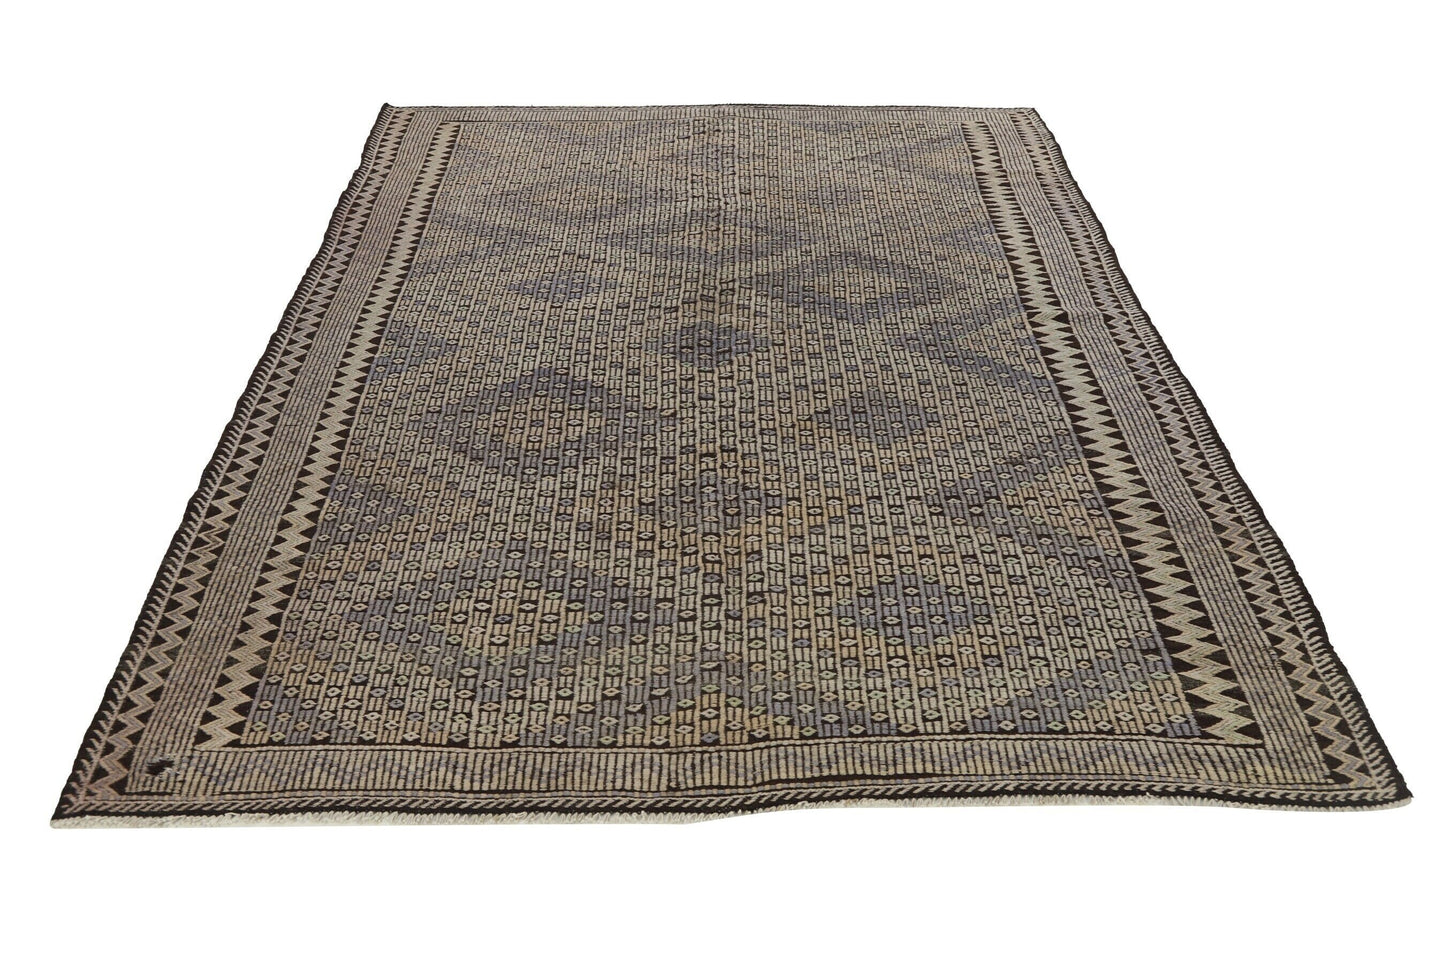 Area Kilim rug, Vintage rug, Turkish rug ,Handmade rug, Antique rug, Unique rug, Kilim rug 6x9, Rustic decor, Living room, 8198